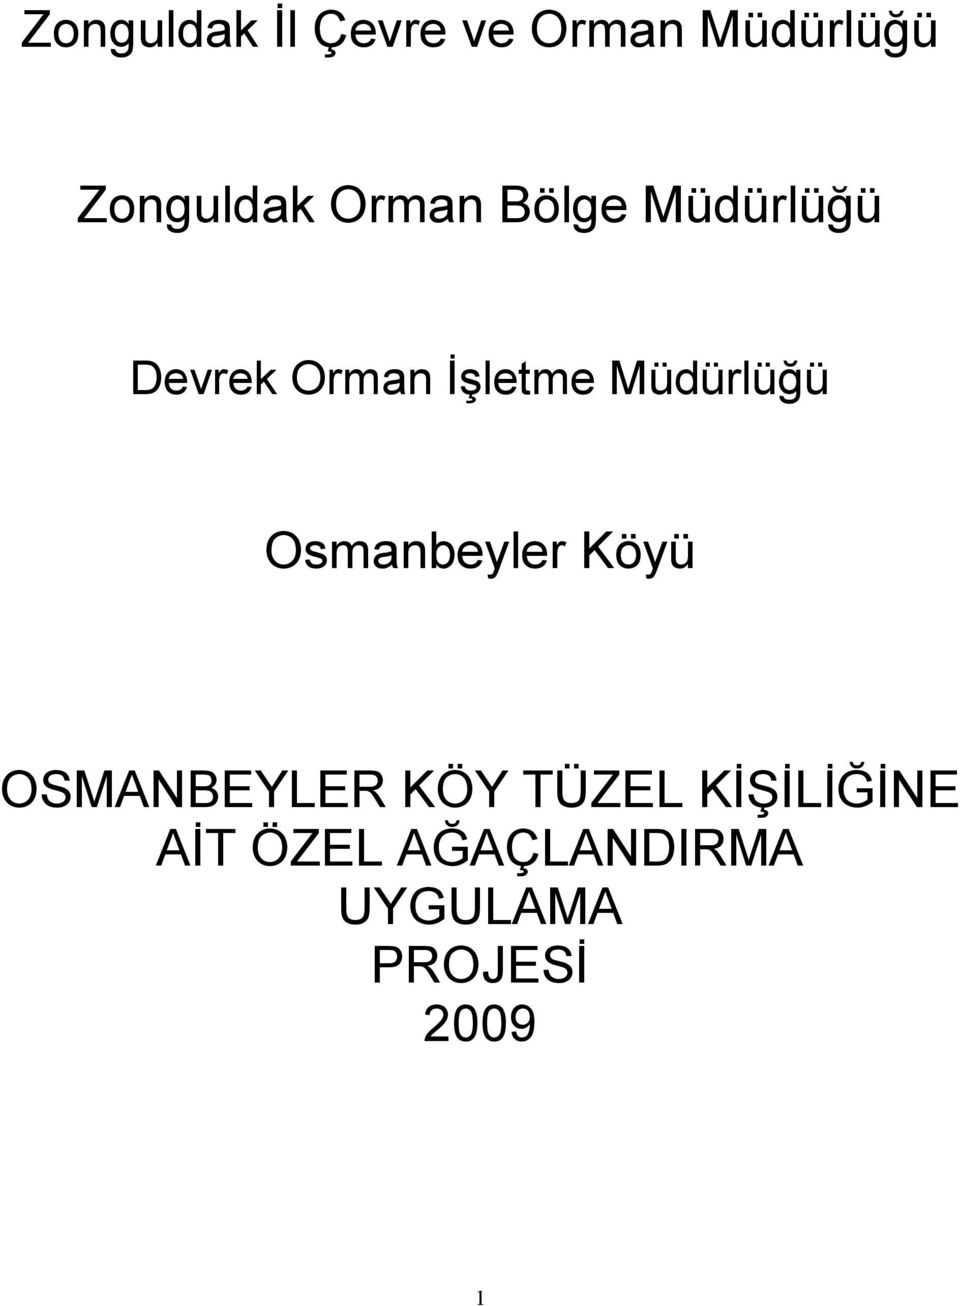 Müdürlüğü Osmanbeyler Köyü OSMANBEYLER KÖY TÜZEL